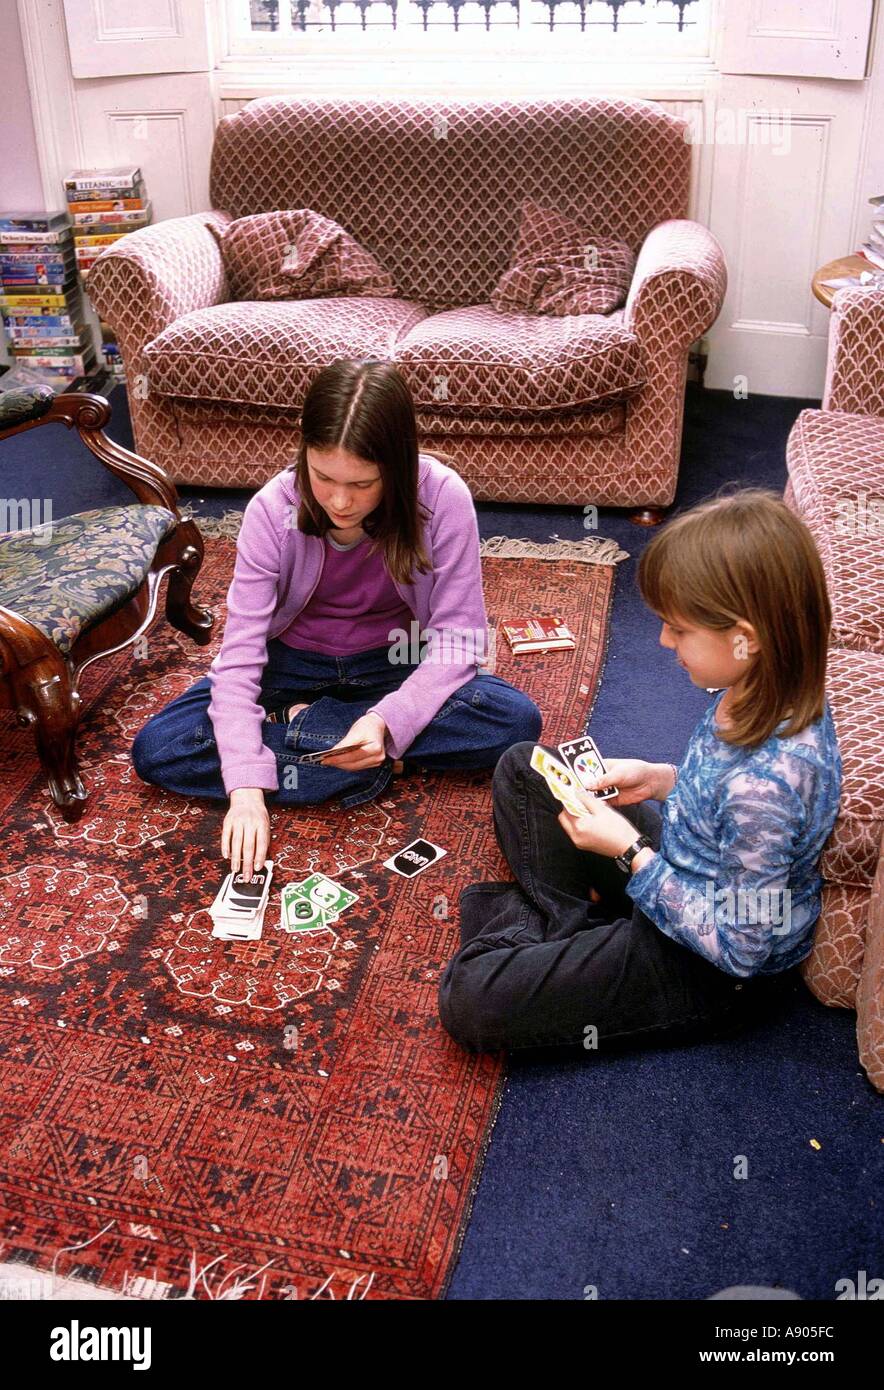 Deux jeunes filles jouant aux cartes Banque D'Images